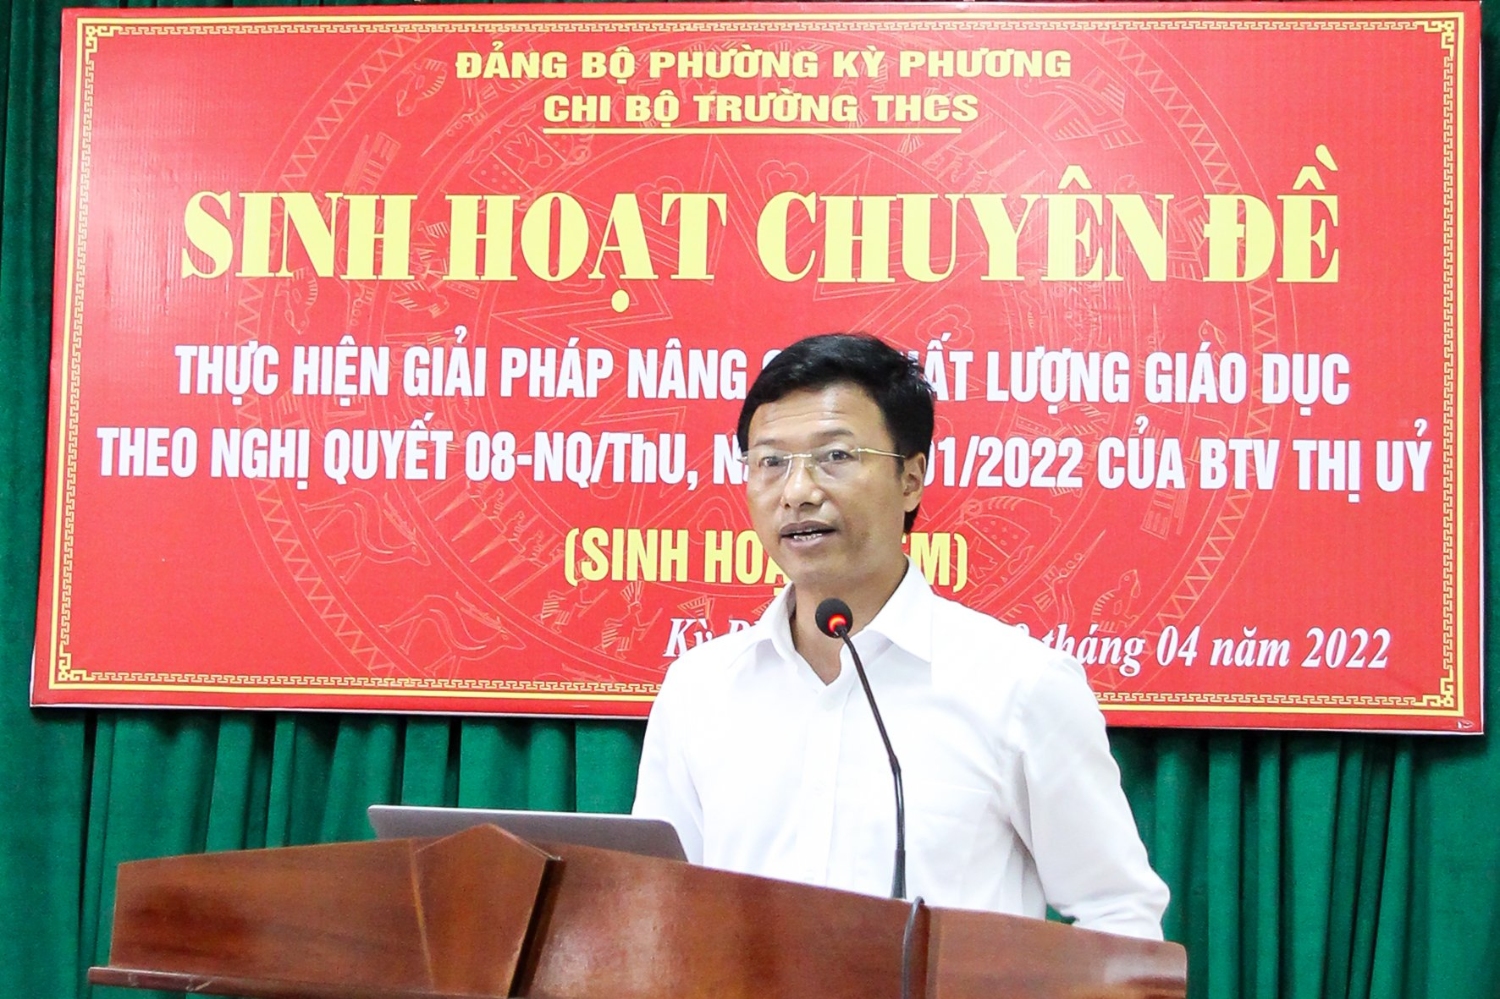 Đồng chí Phan Duy Vĩnh – phó bí thư thường trực thị ủy, Chủ tịch HĐND thị xã tham dự và phát biểu hội nghị